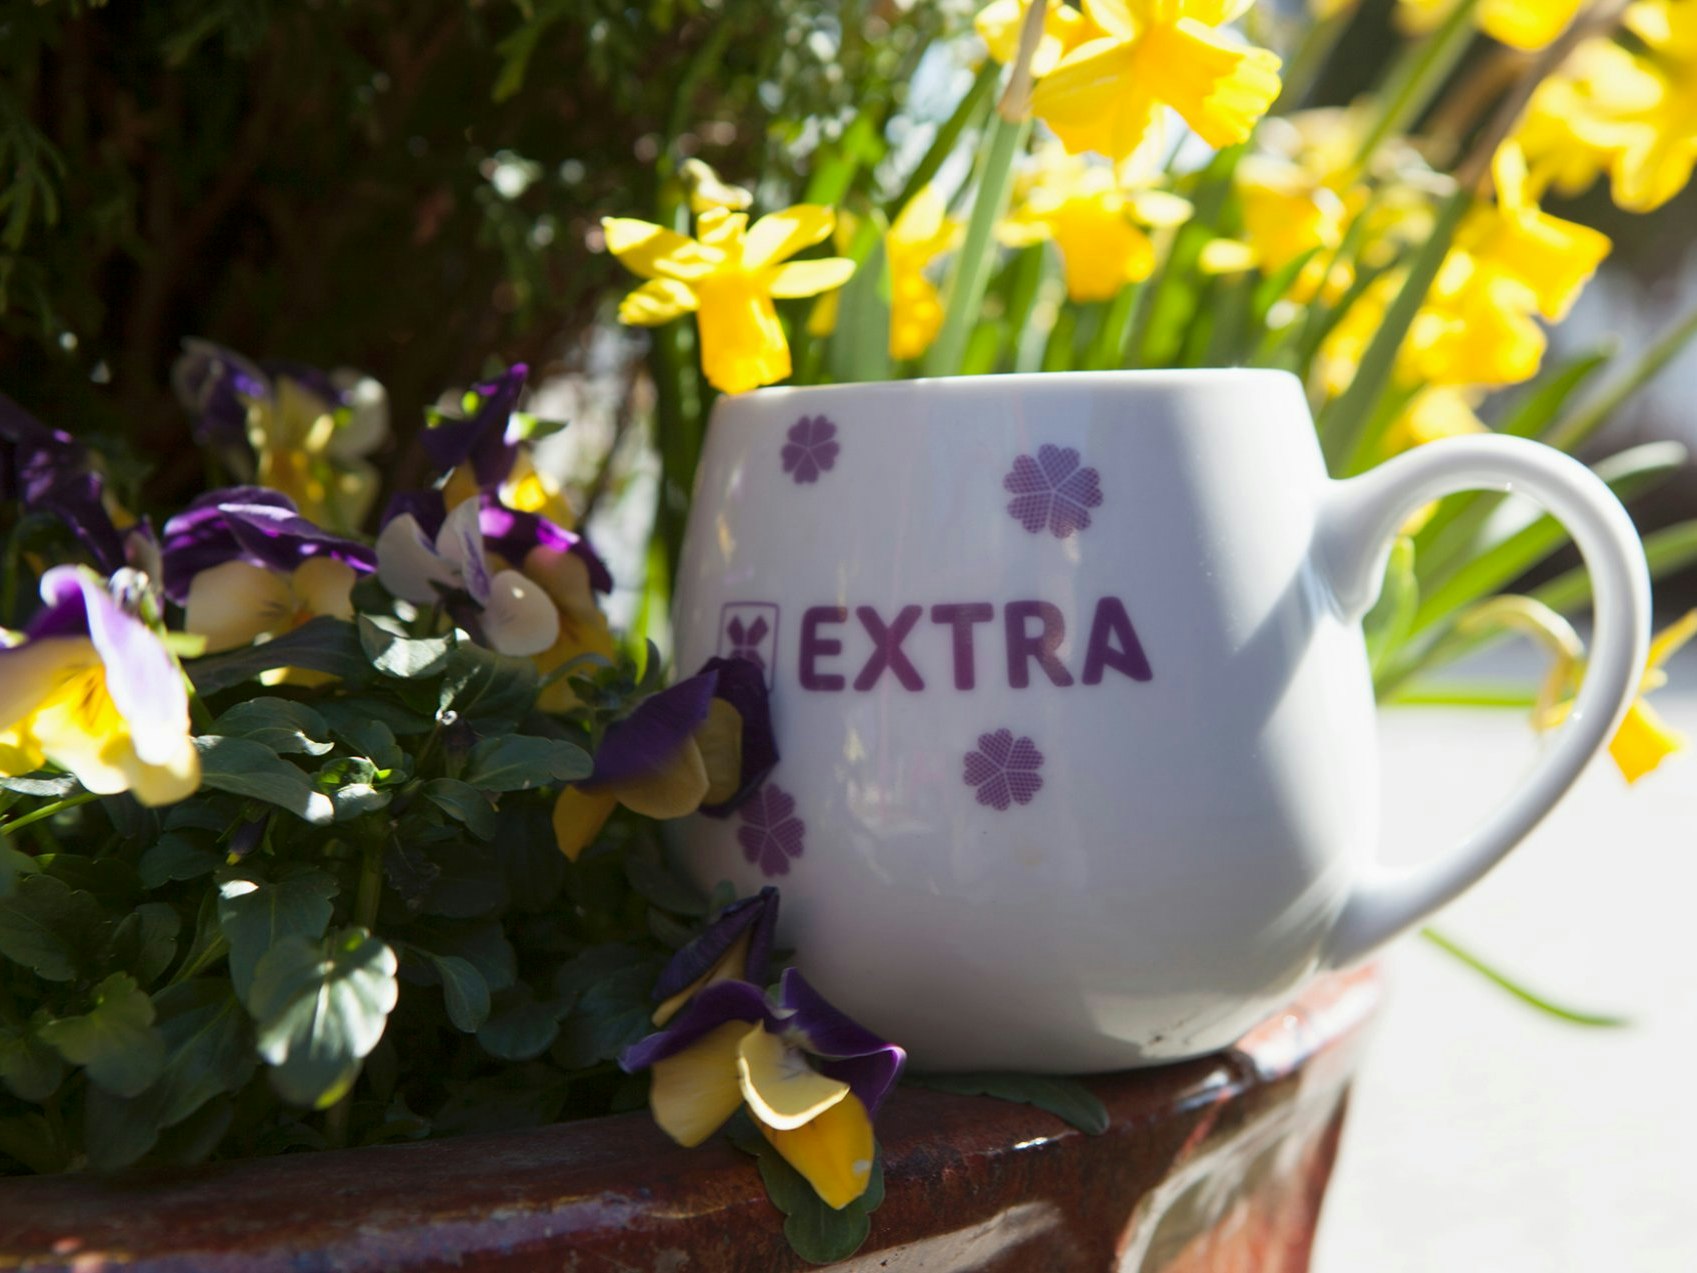 En kopp med lilla Extra-logo plassert på en blomsterpotte med gule og lilla blomster.